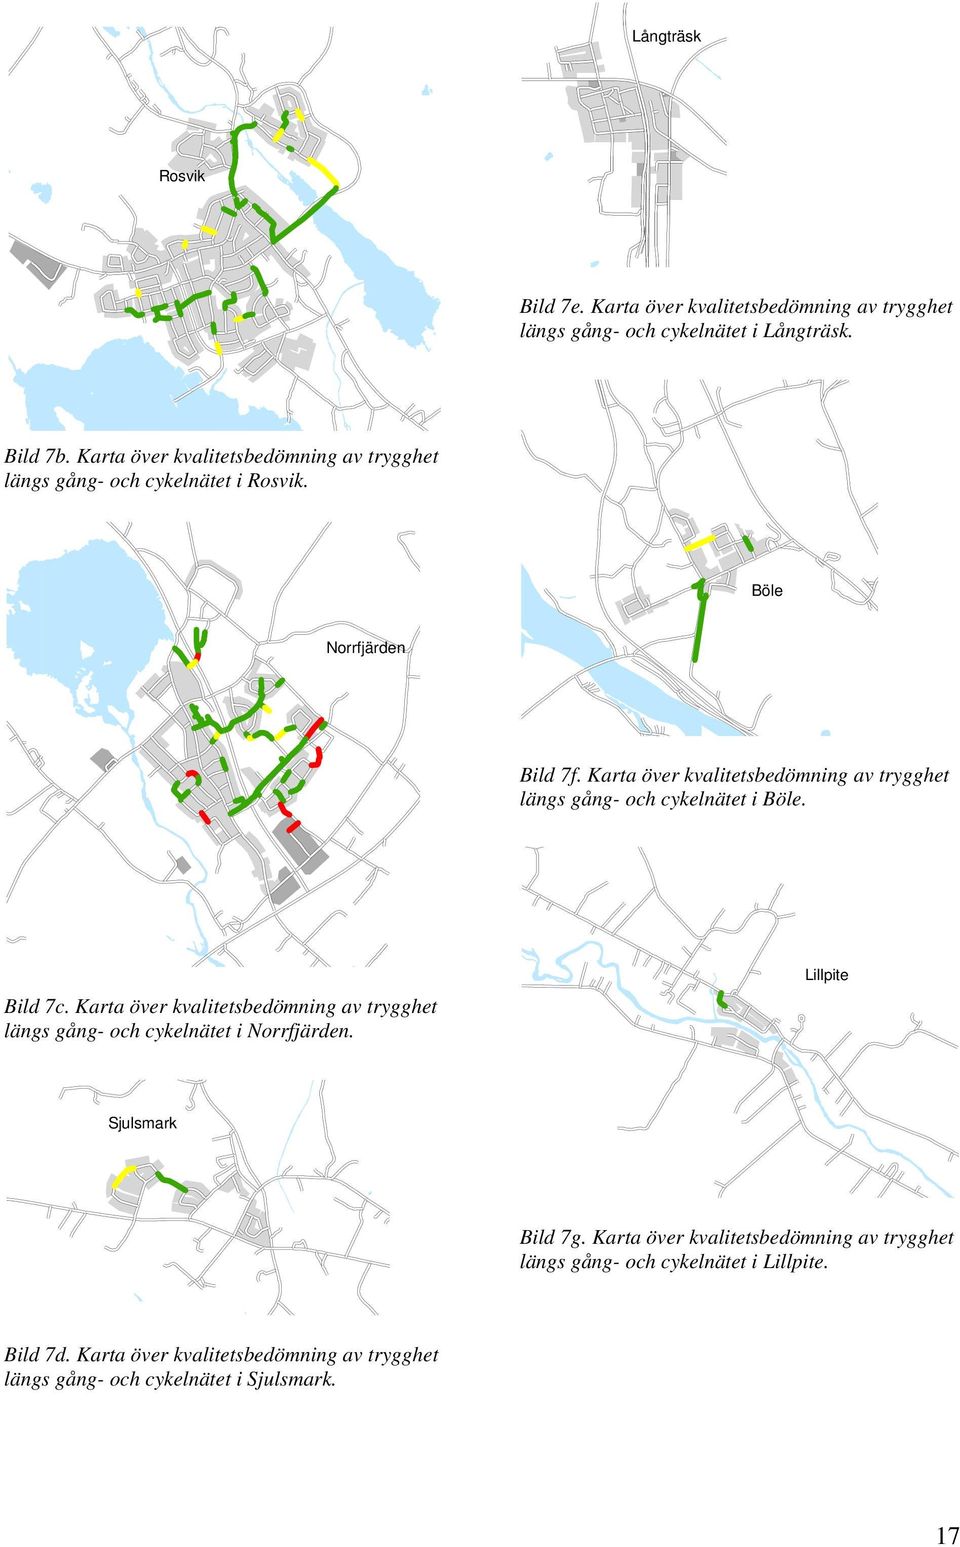 Karta över kvalitetsbedömning av trygghet längs gång- och cykelnätet i Böle. Bild 7c.